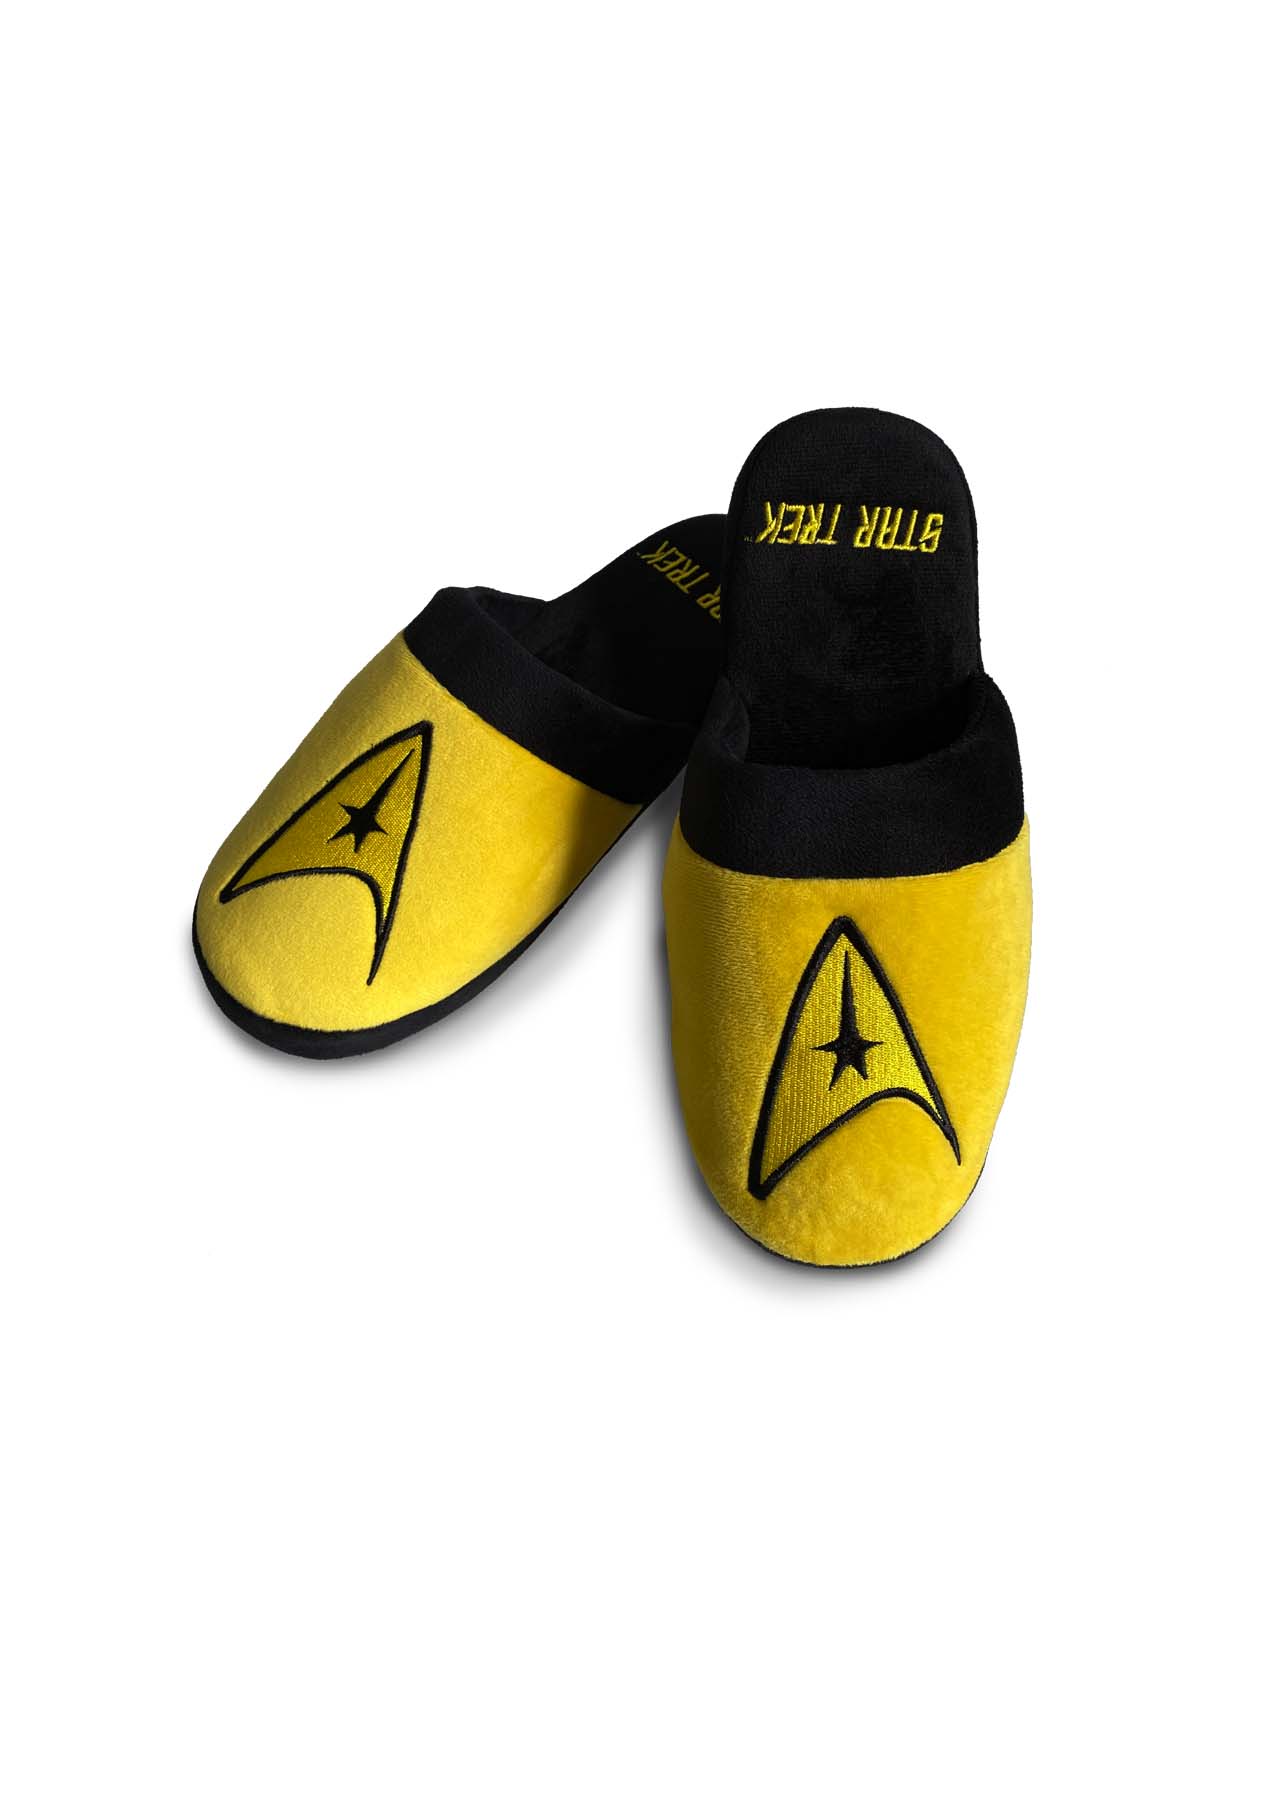 Groovy Pánské pantofle - Star Trek, žluté